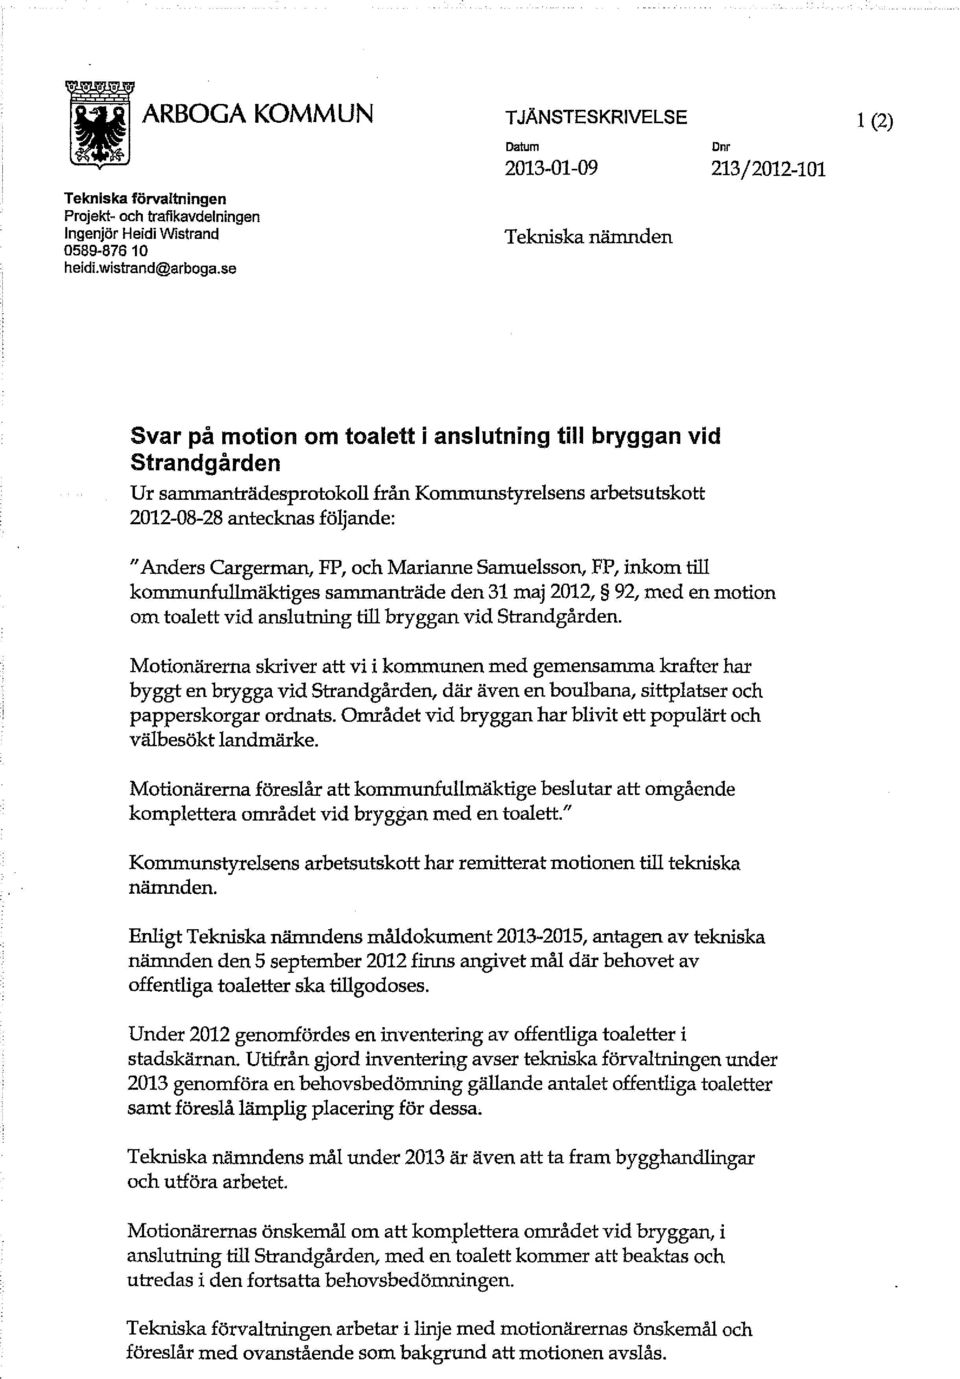 antecknas följande: "Anders Cargerman, FP, och Marianne Samuelsson, FP, inkom till kommunfullmäktiges sammanträde den 31 maj 2012, 92, med en motion om toalett vid anslutning till bryggan vid